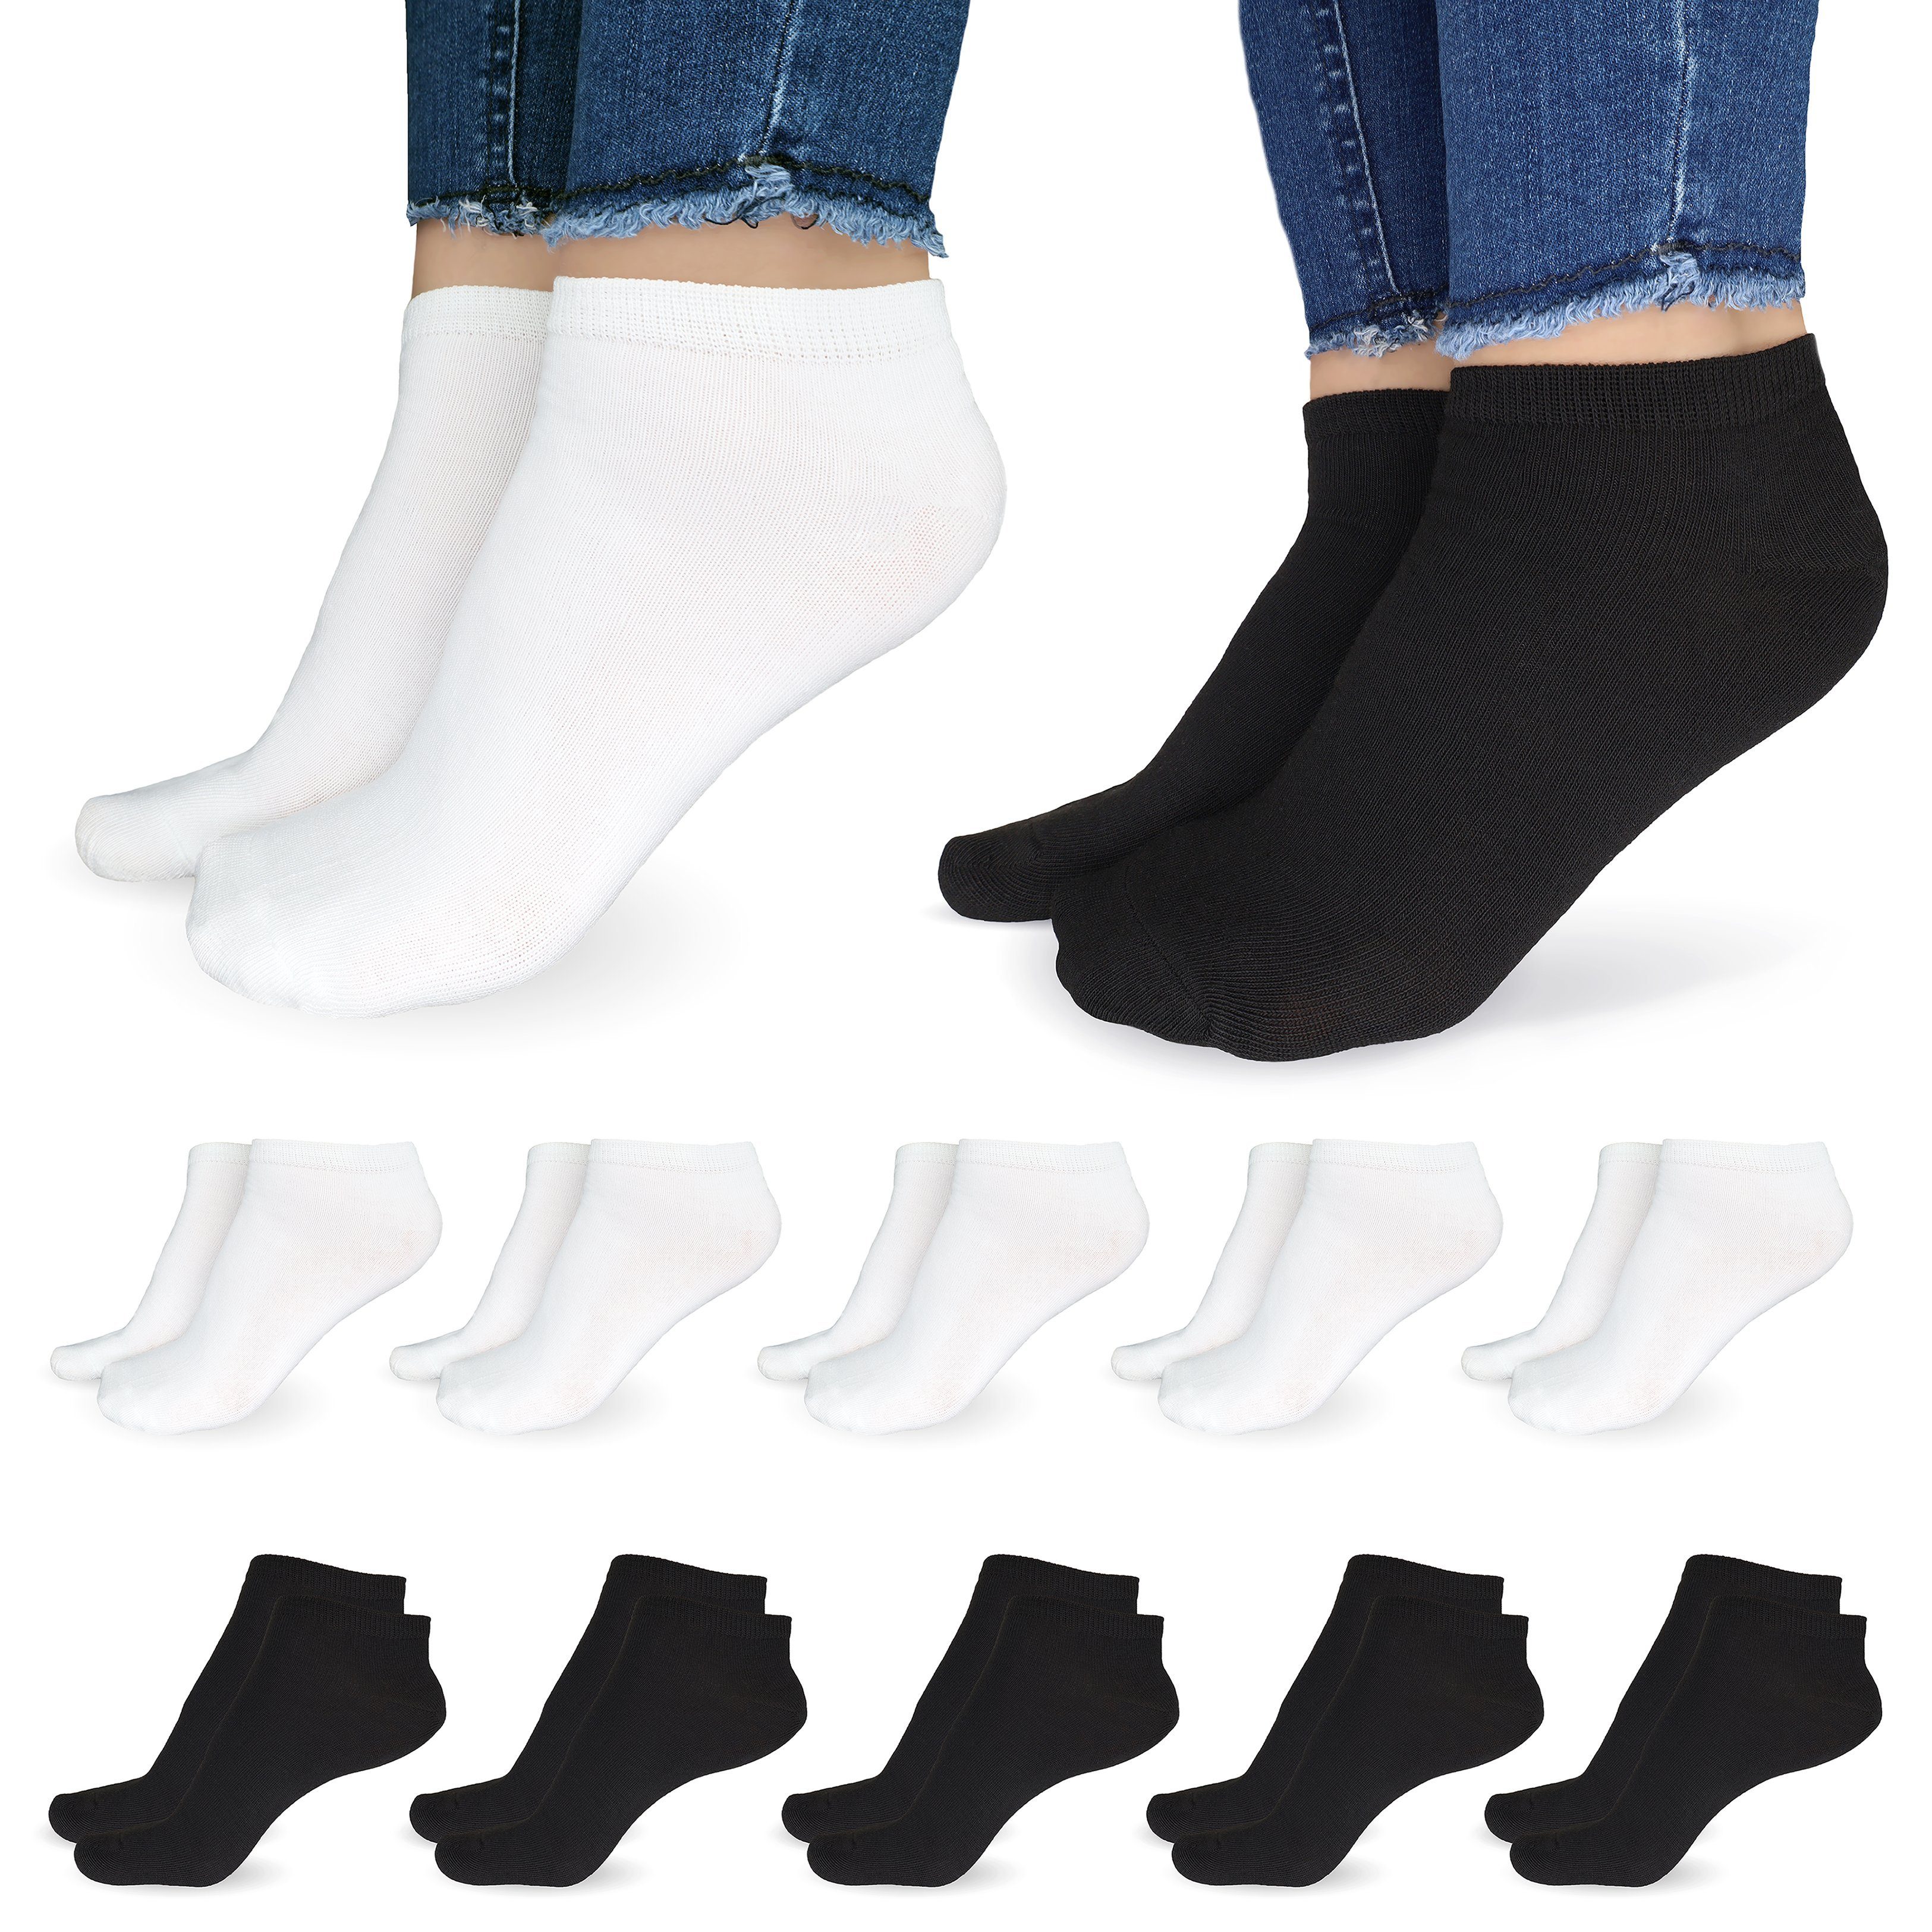 SO.I Freizeitsocken Sneaker Socken Damen & Herren aus Baumwolle (Größen 35-46, 5-20 Paar) atmungsaktive Unisex Socken 5x Schwarz + 5x Weiß